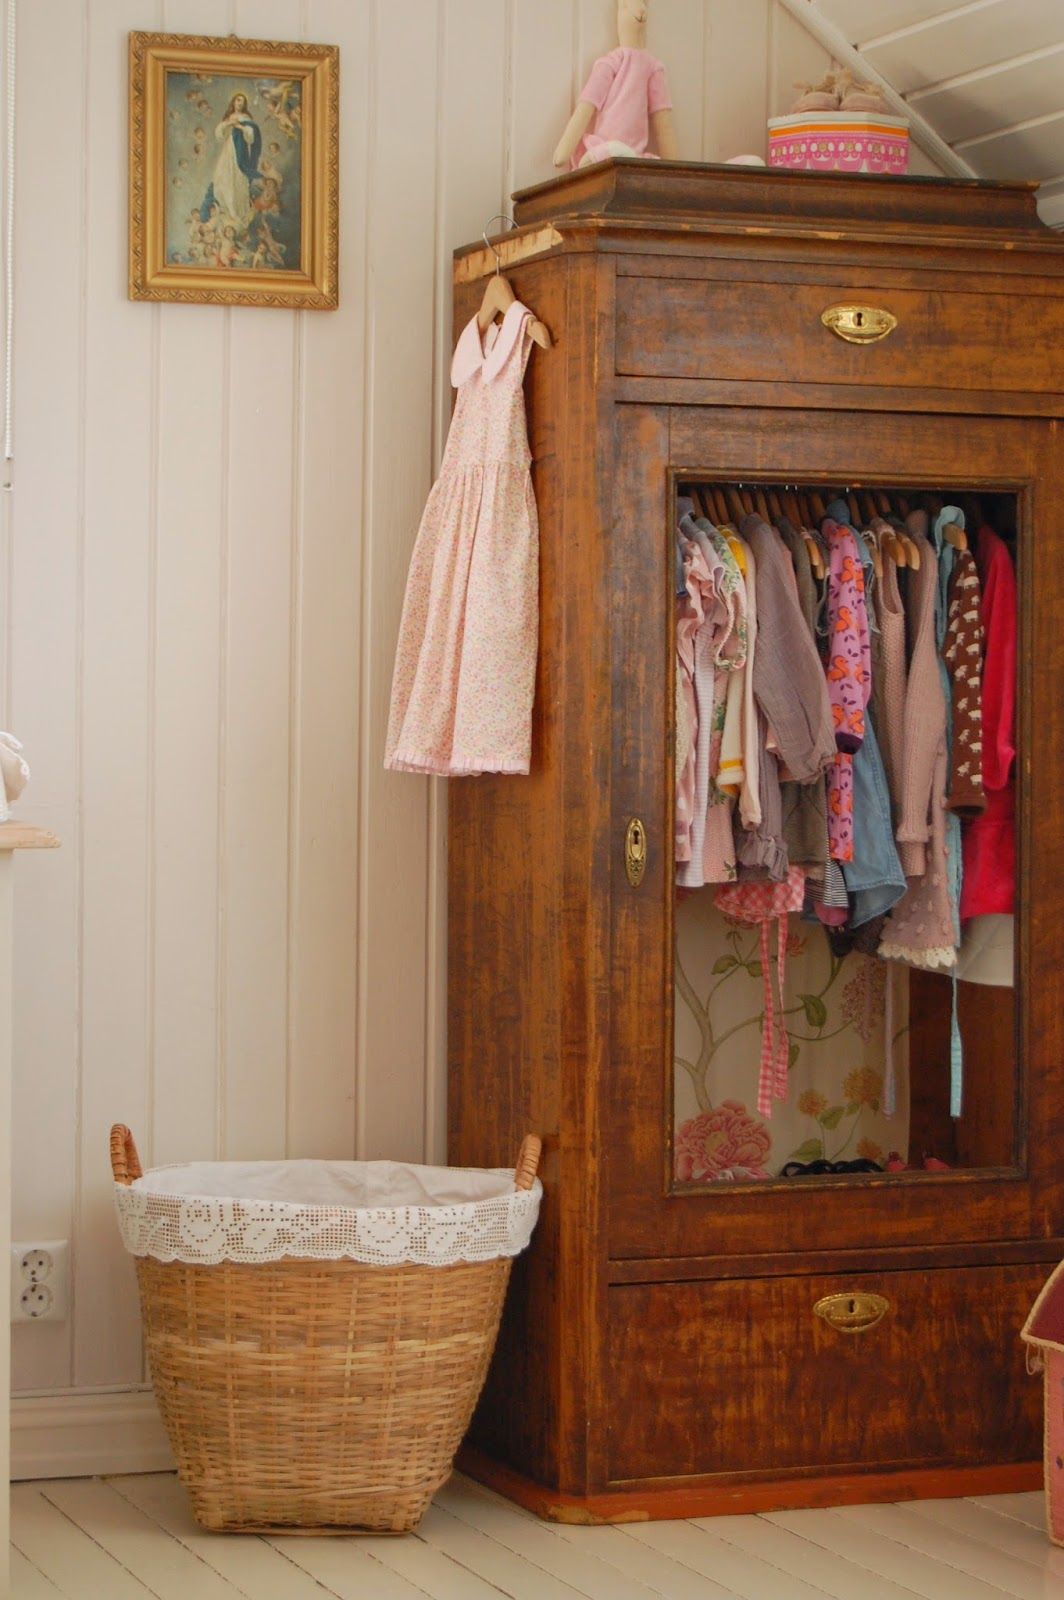 Children’S Dressers The Best Storage Solution for Kids’ Wardrobe Organization